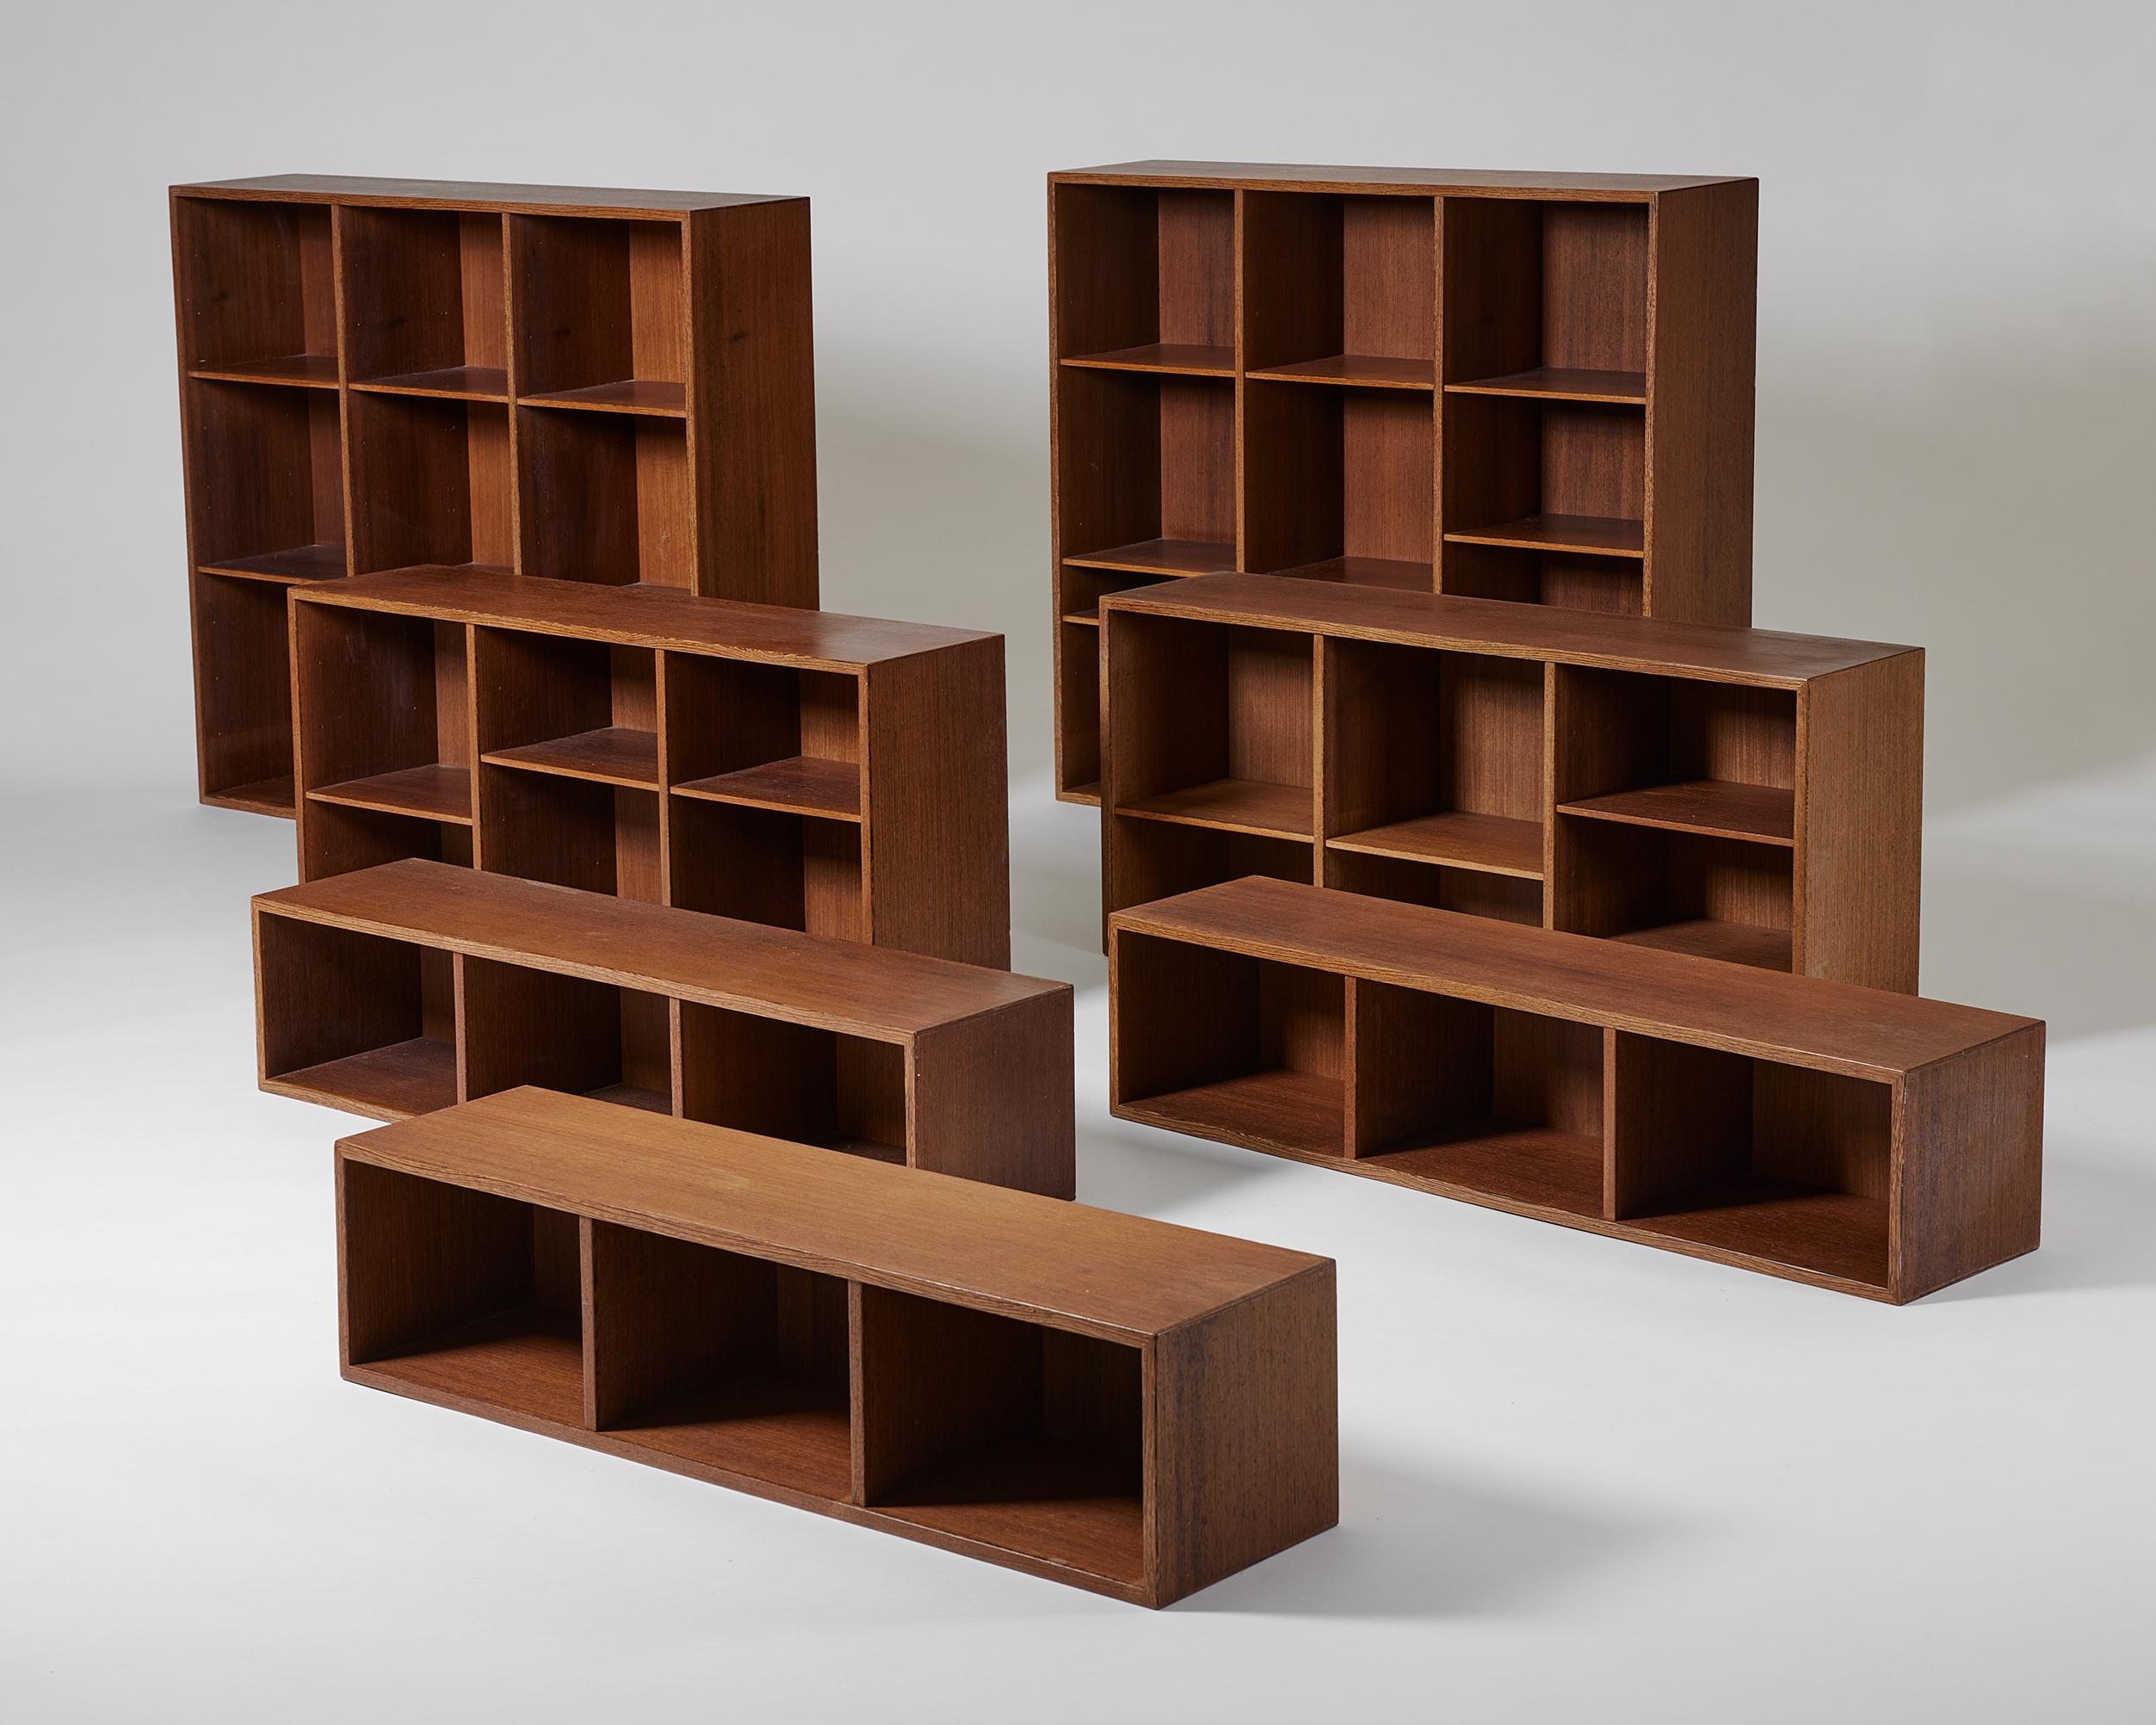 Set of seven bookshelves model 24 designed by Erik Wörts for Kjellerup Möbelfabrik,
Denmark, 1960s.

Wenge.

Dimensions of the two larger shelves:
H: 96 cm / 3' 1 3/4''
W: 112 cm / 3' 8''
D: 24 cm / 9 1/2''

Dimensions of the two medium shelves:
H: